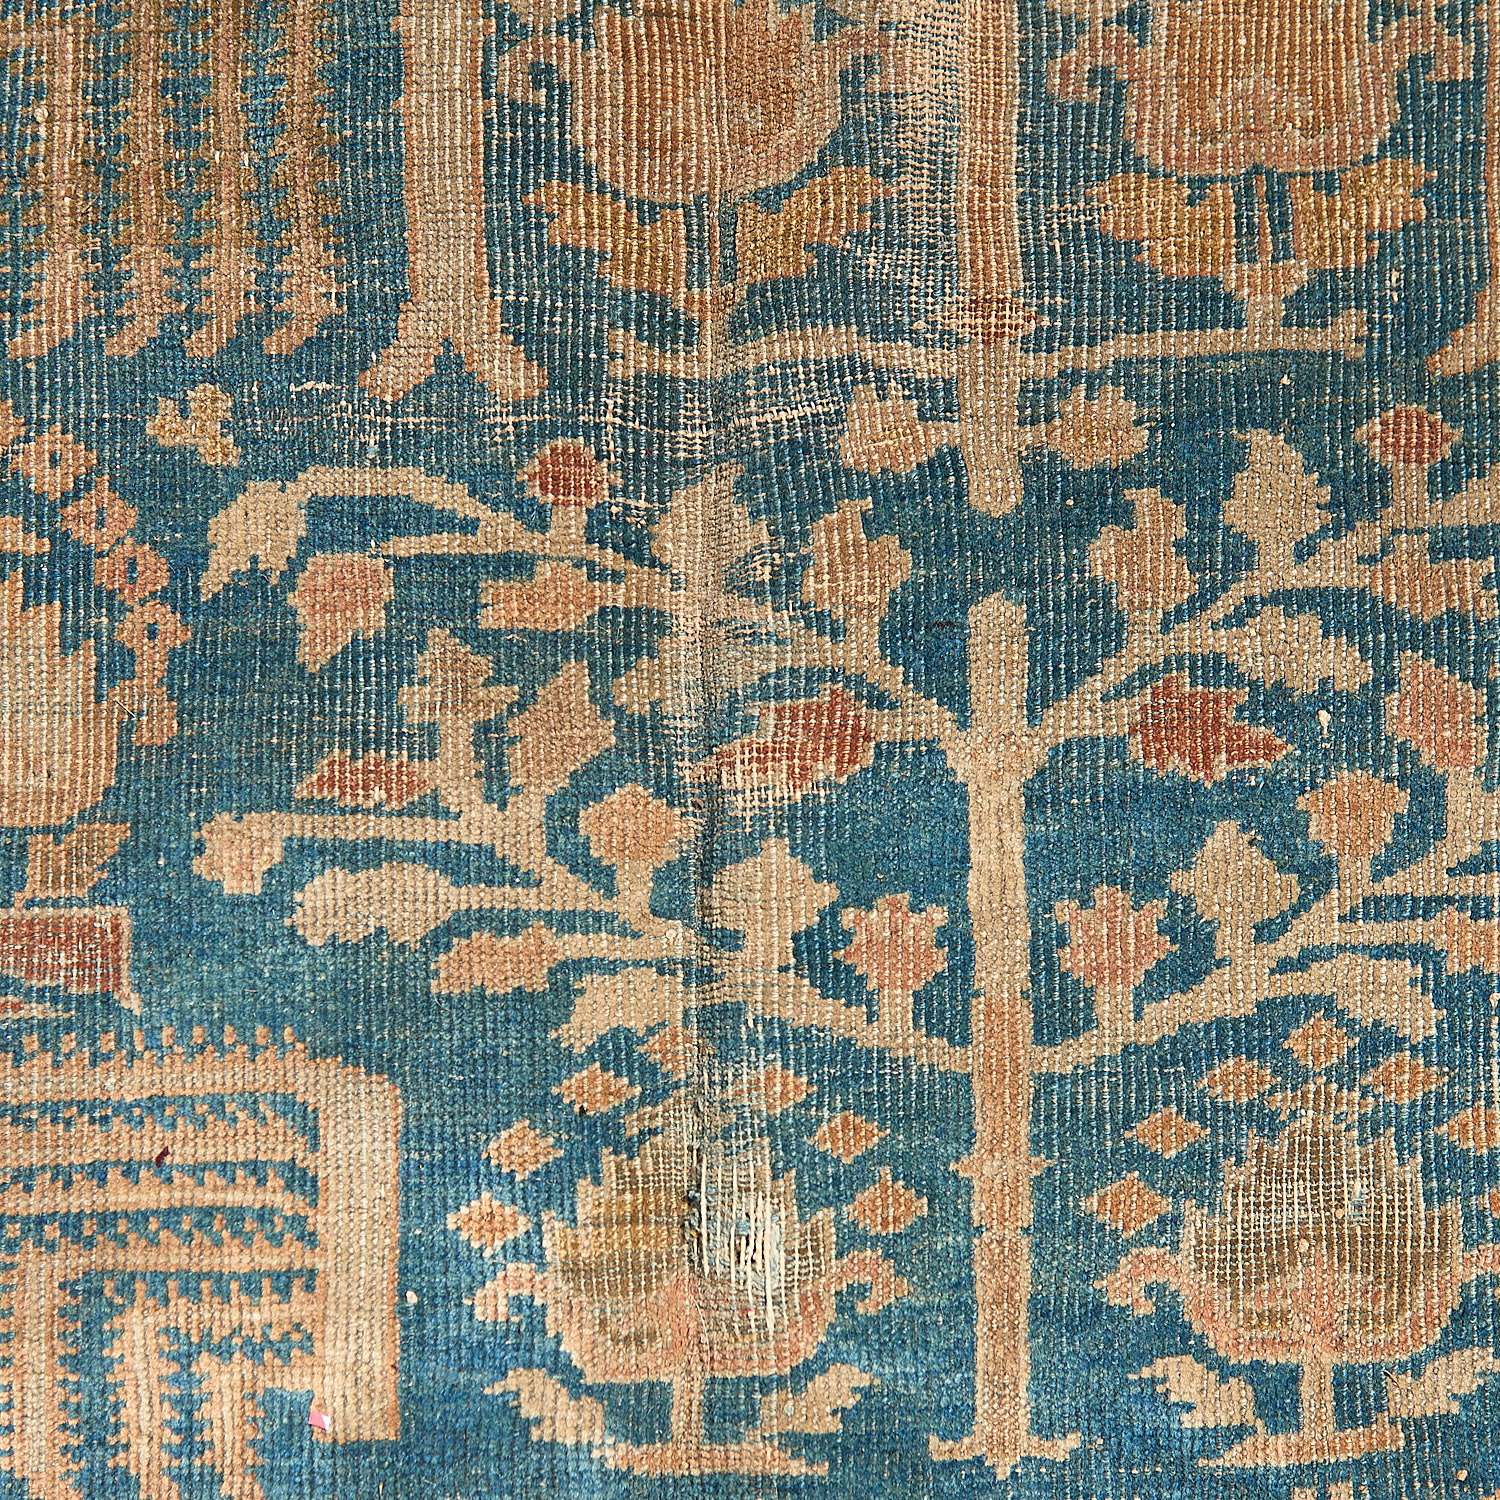 Persian carpet - Image 6 of 8